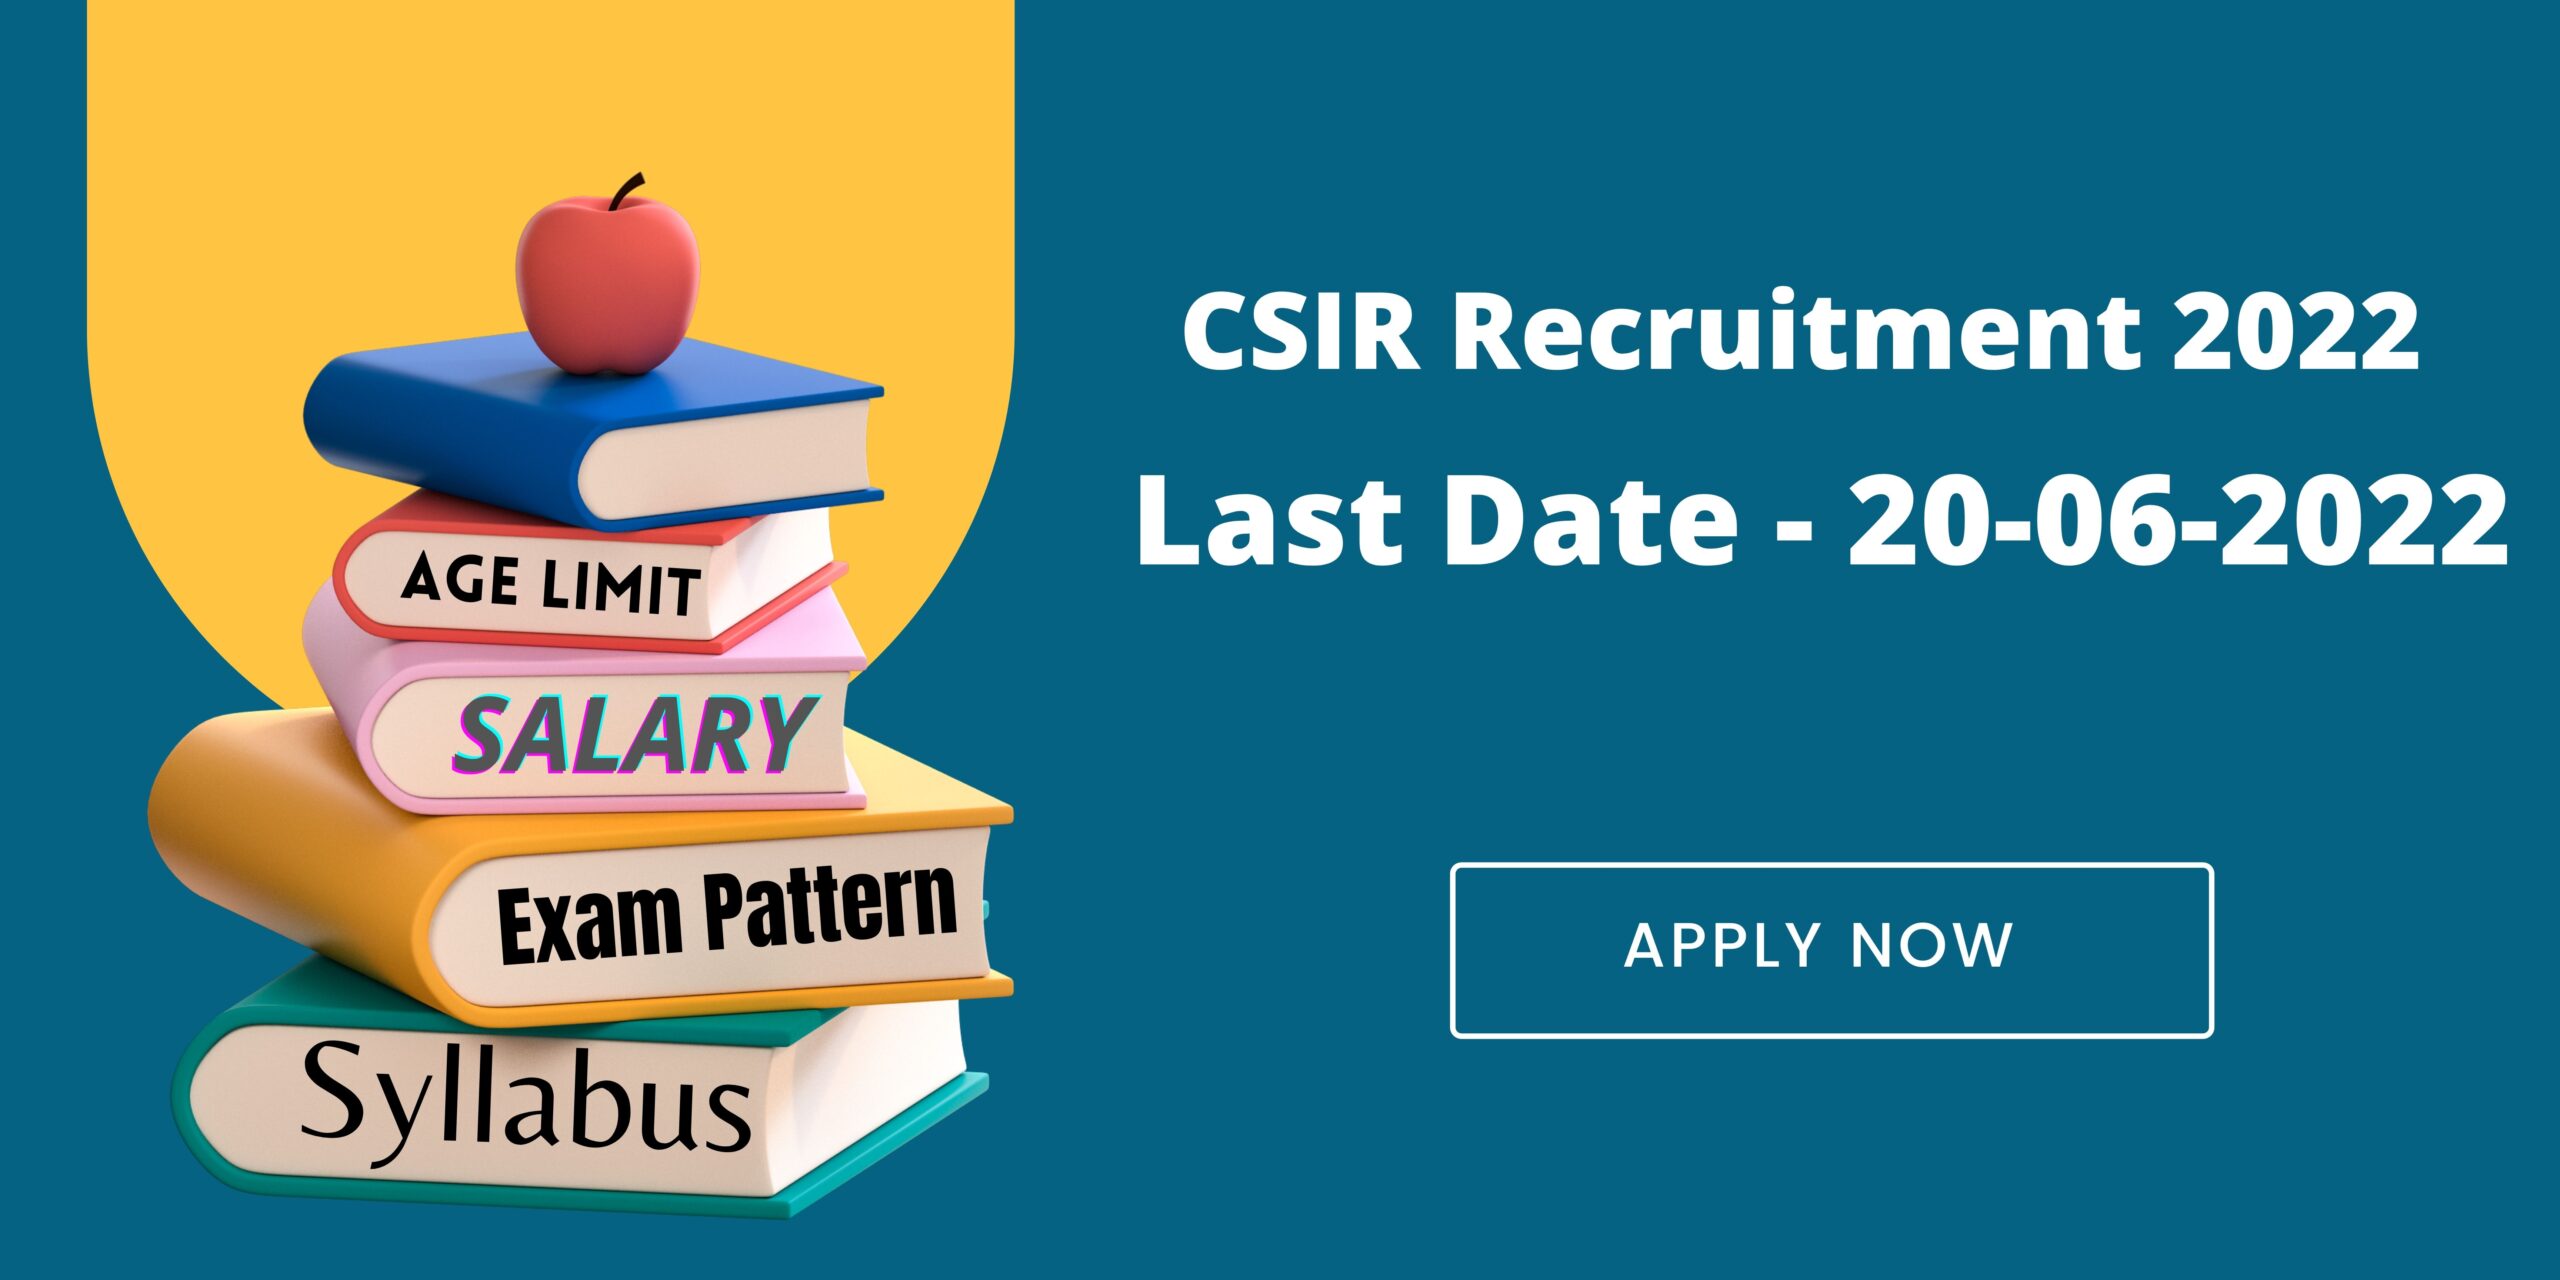 CSIR Recruitment 2022